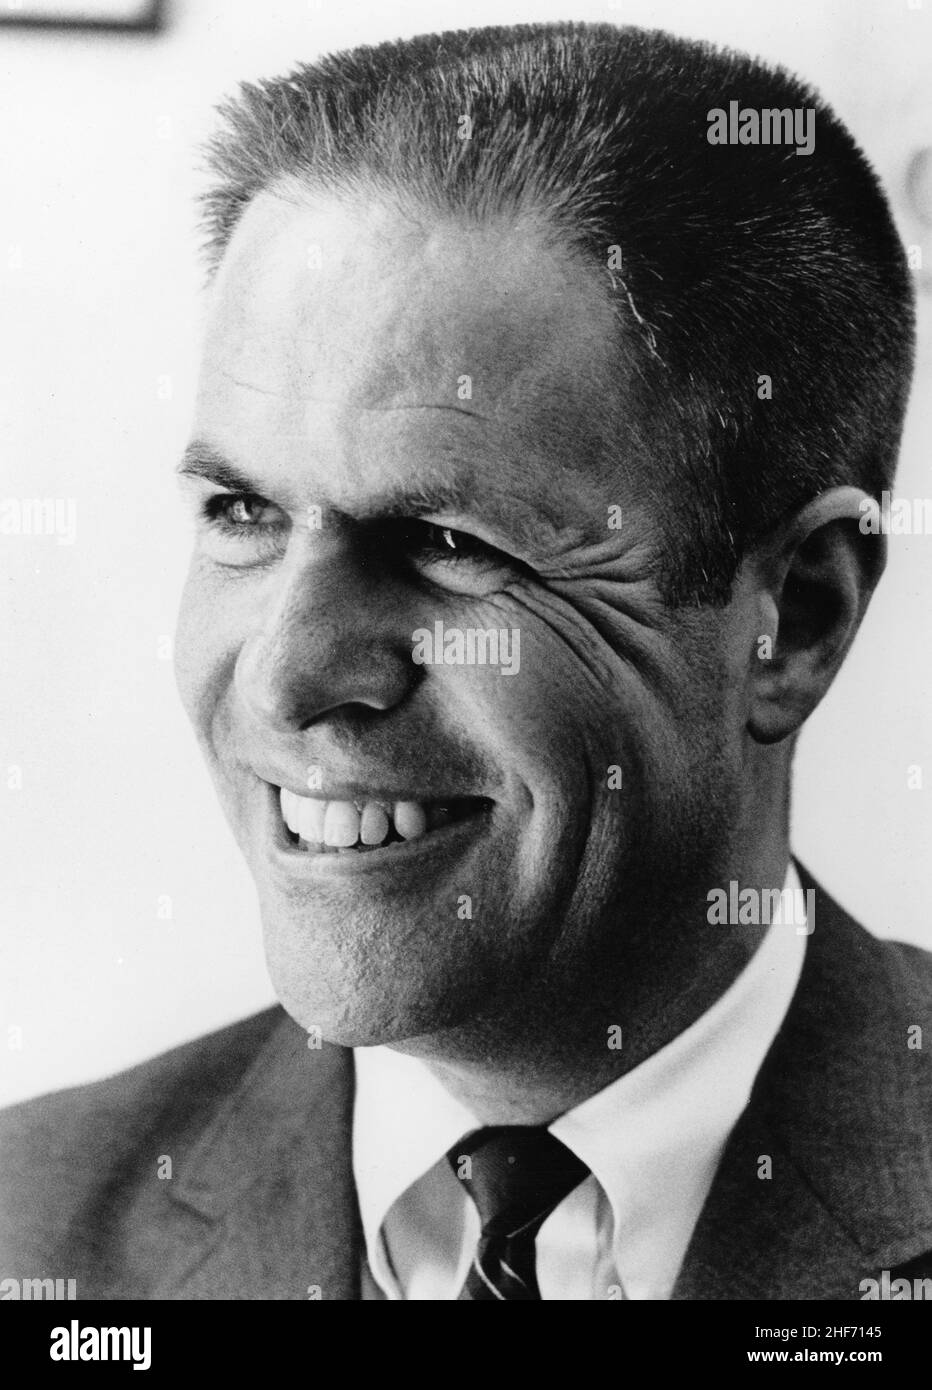 Harry Robbins 'Bob' Haldeman (1926-1993) war ein Republikaner, der während seiner politischen Karriere mit Richard M Nixon assoziiert wurde. Haldeman wurde 1968 zum Stabschef von Nixon ernannt und spielte um 1970 eine herausragende Rolle in Watergate, Washington, DC. Stockfoto